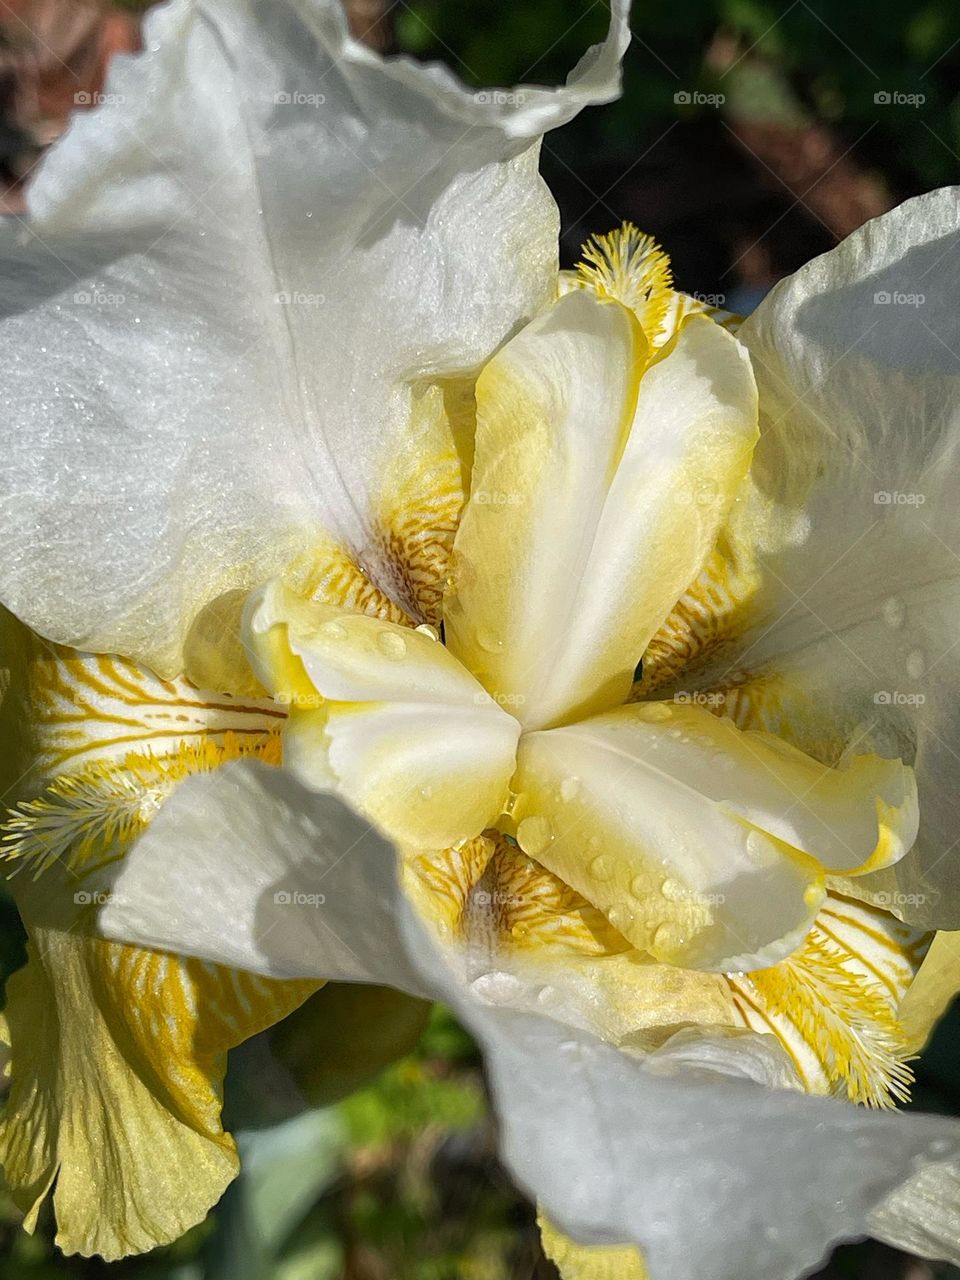 Yellow and white iris in my garden 